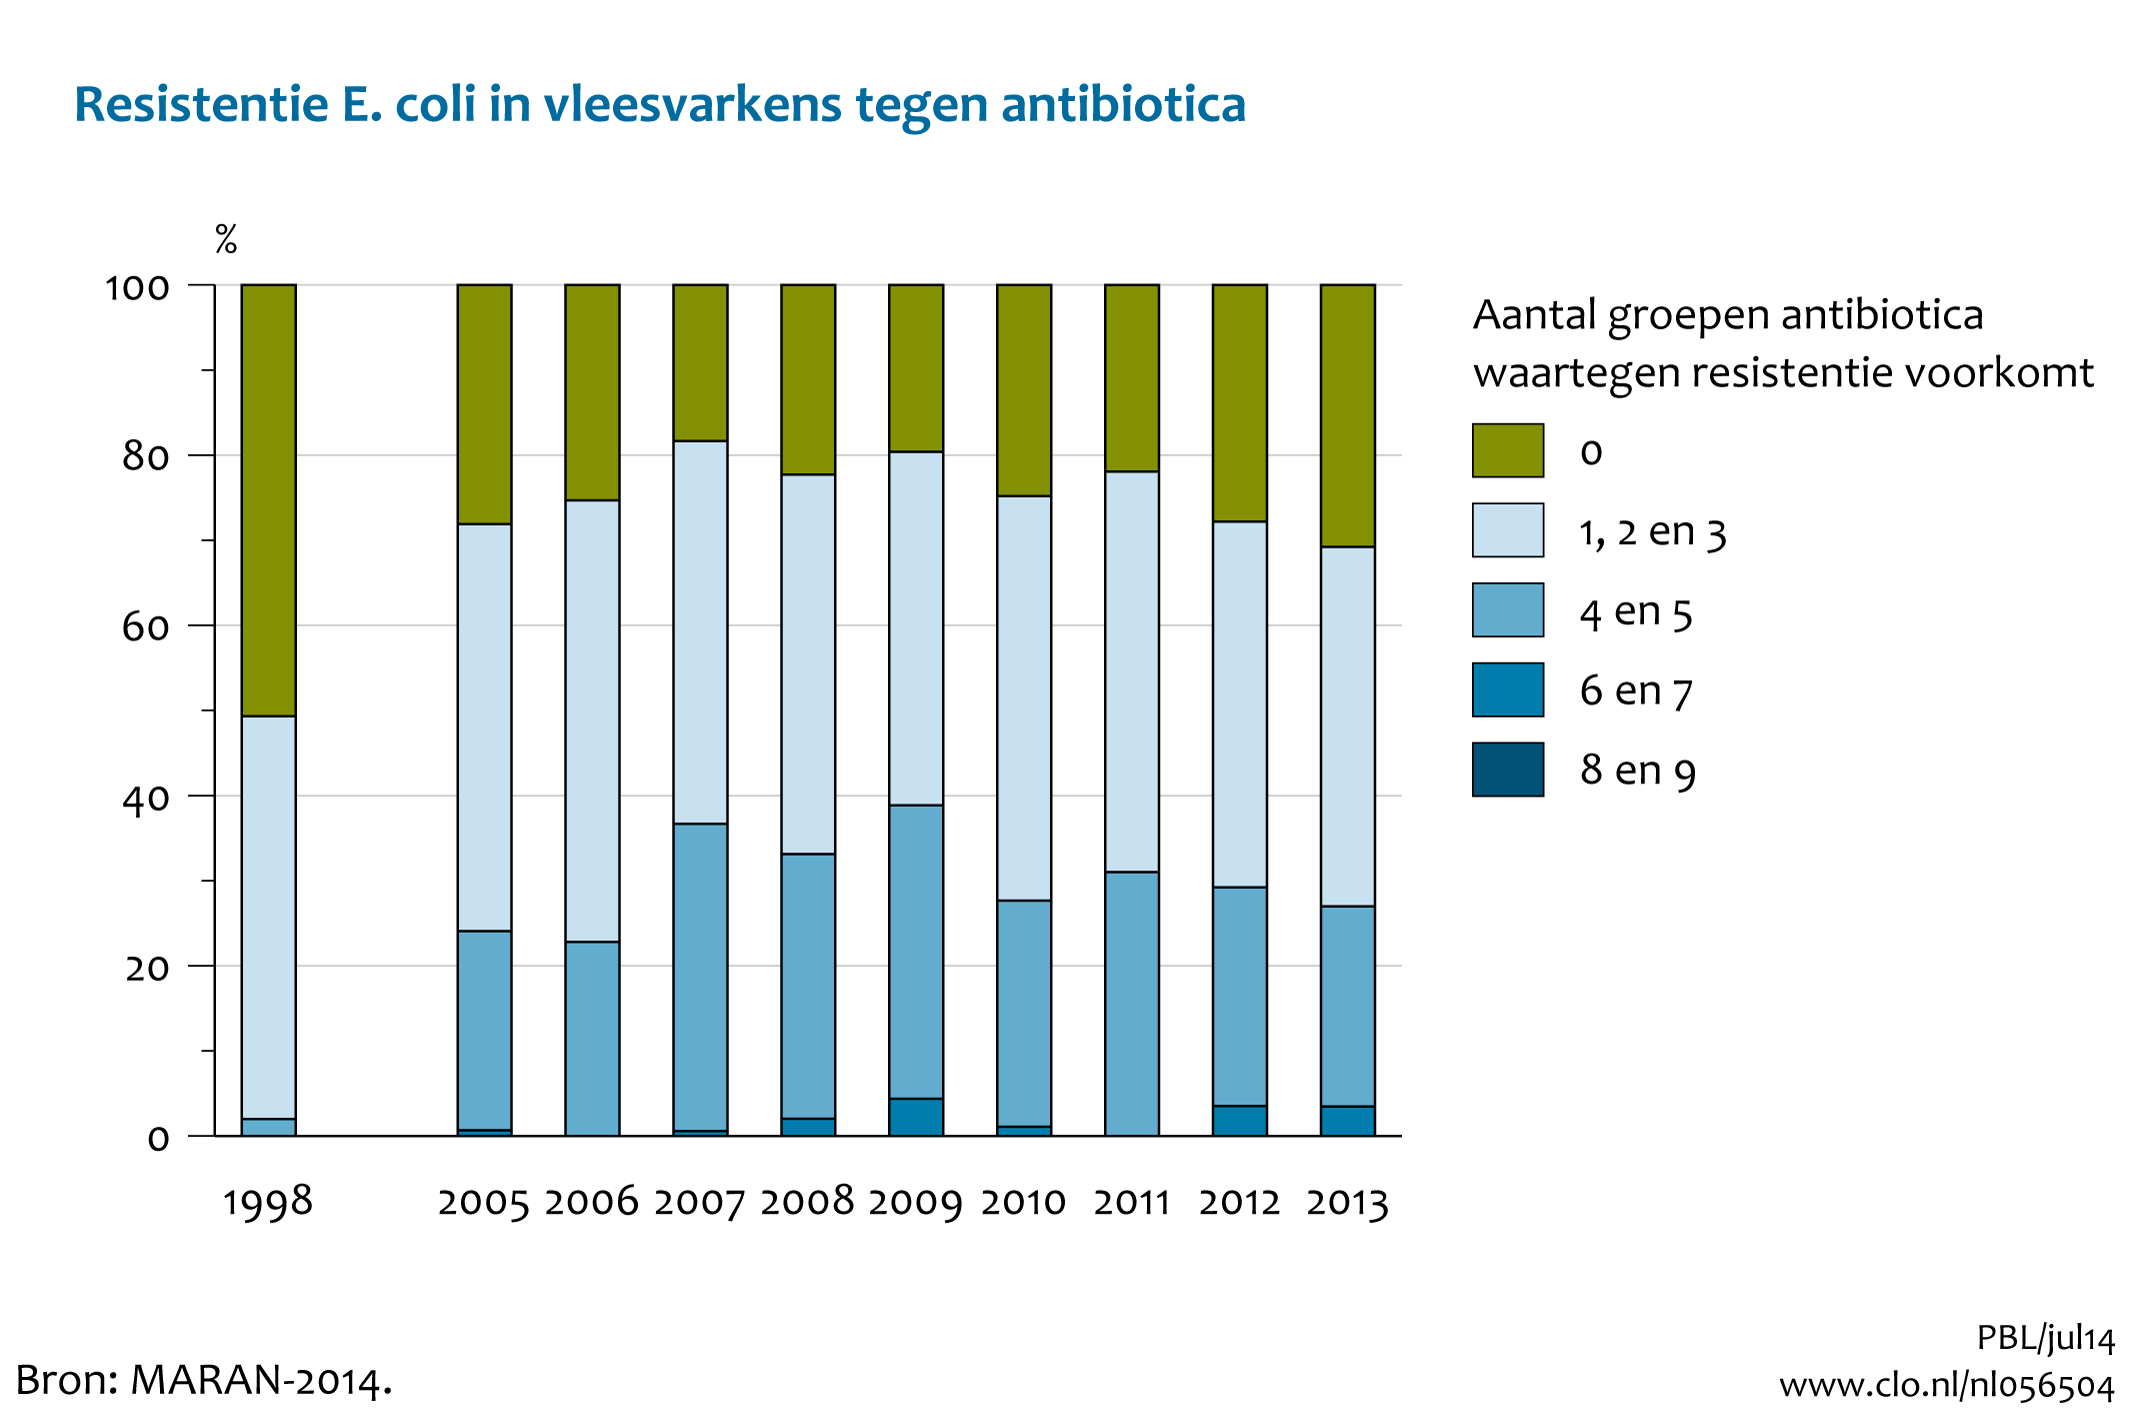 Figuur Resistentie E.coli in vleesvarkens tegen antibiotica. Steeds meer dieren dragen bacteriën met meervoudige resistentie tegen antibiotica.. In de rest van de tekst wordt deze figuur uitgebreider uitgelegd.